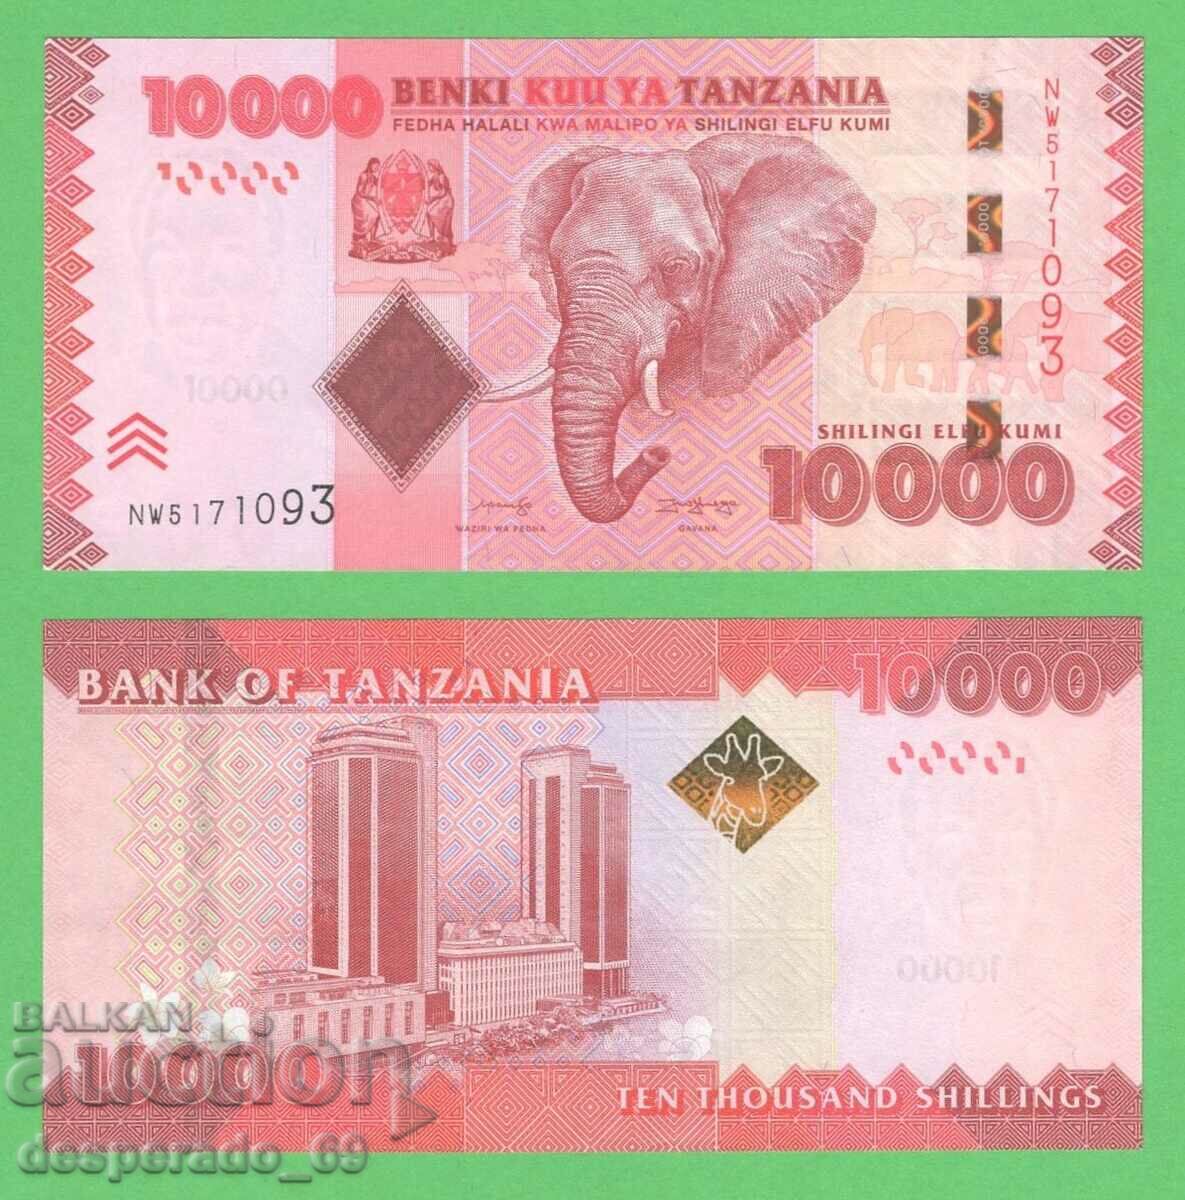 (¯`'•.¸ TANZANIA 10.000 șilingi 2020 UNC ¸.•'´¯)